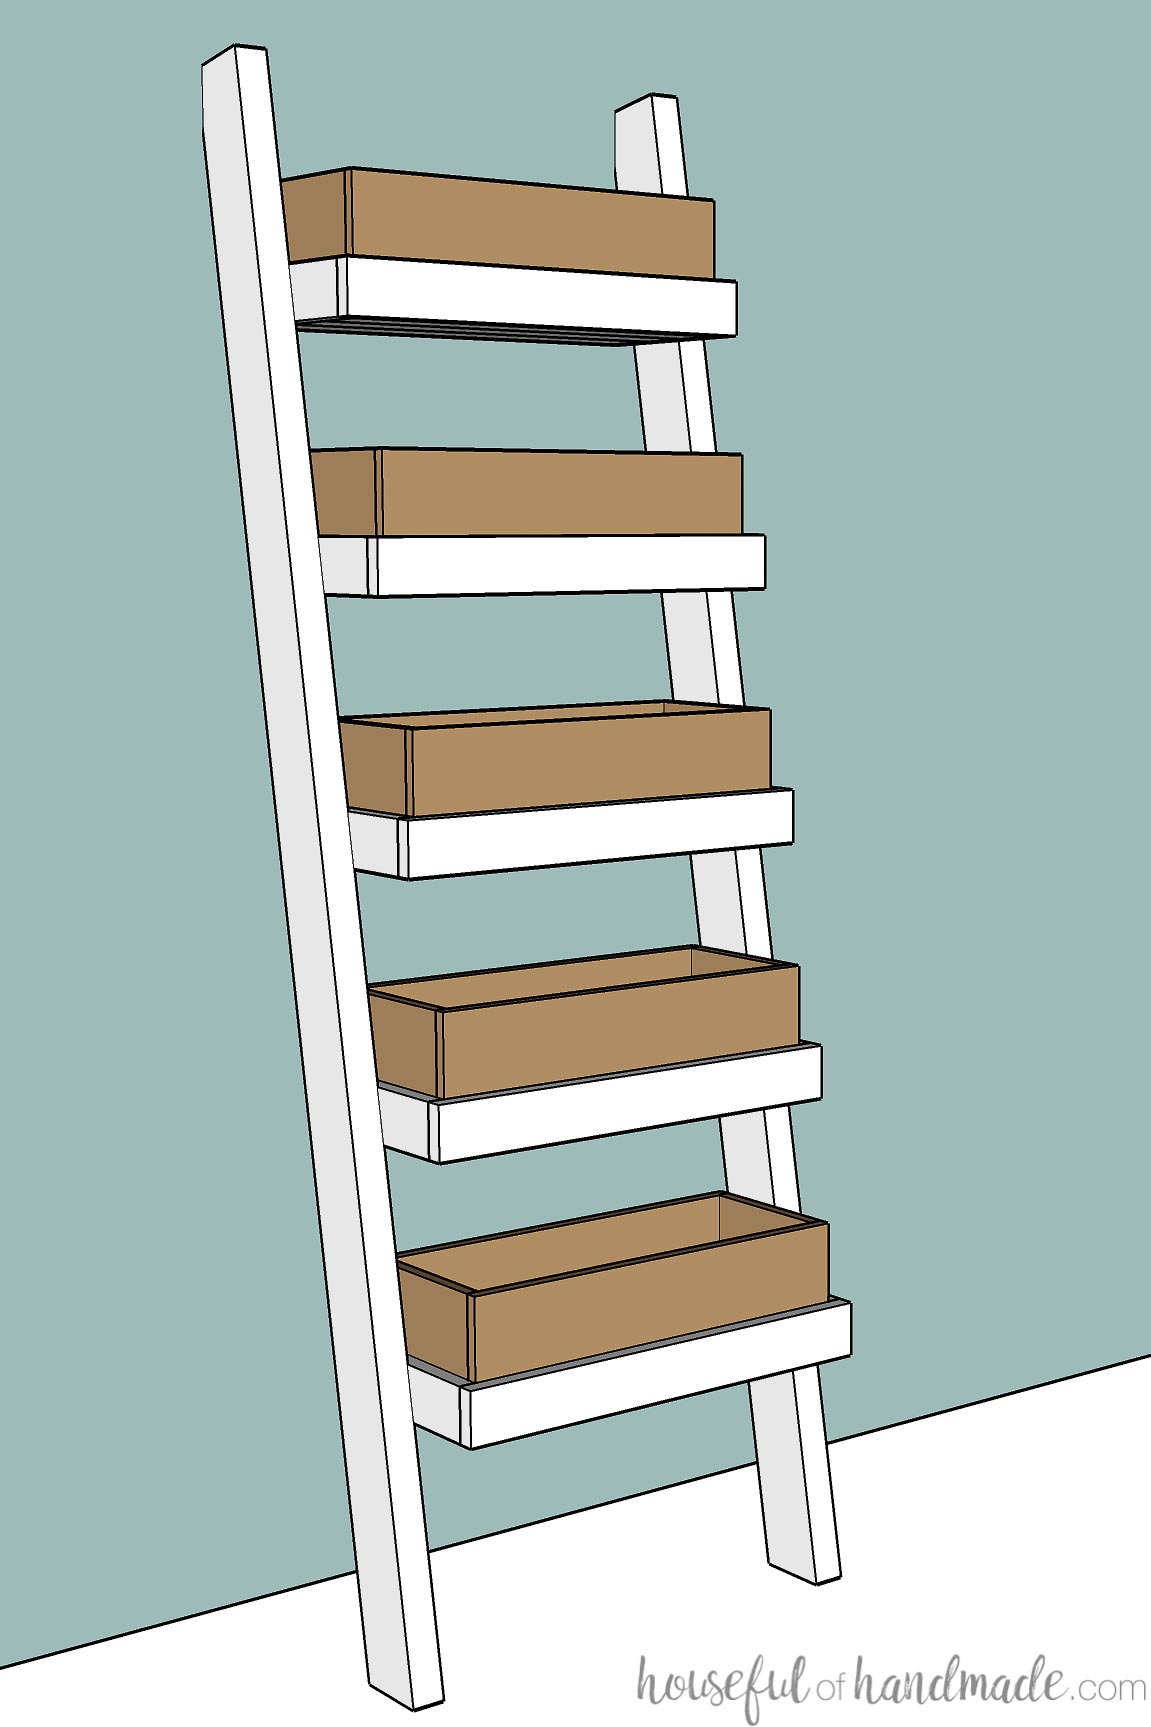 3D sketch of the DIY ladder planter. 